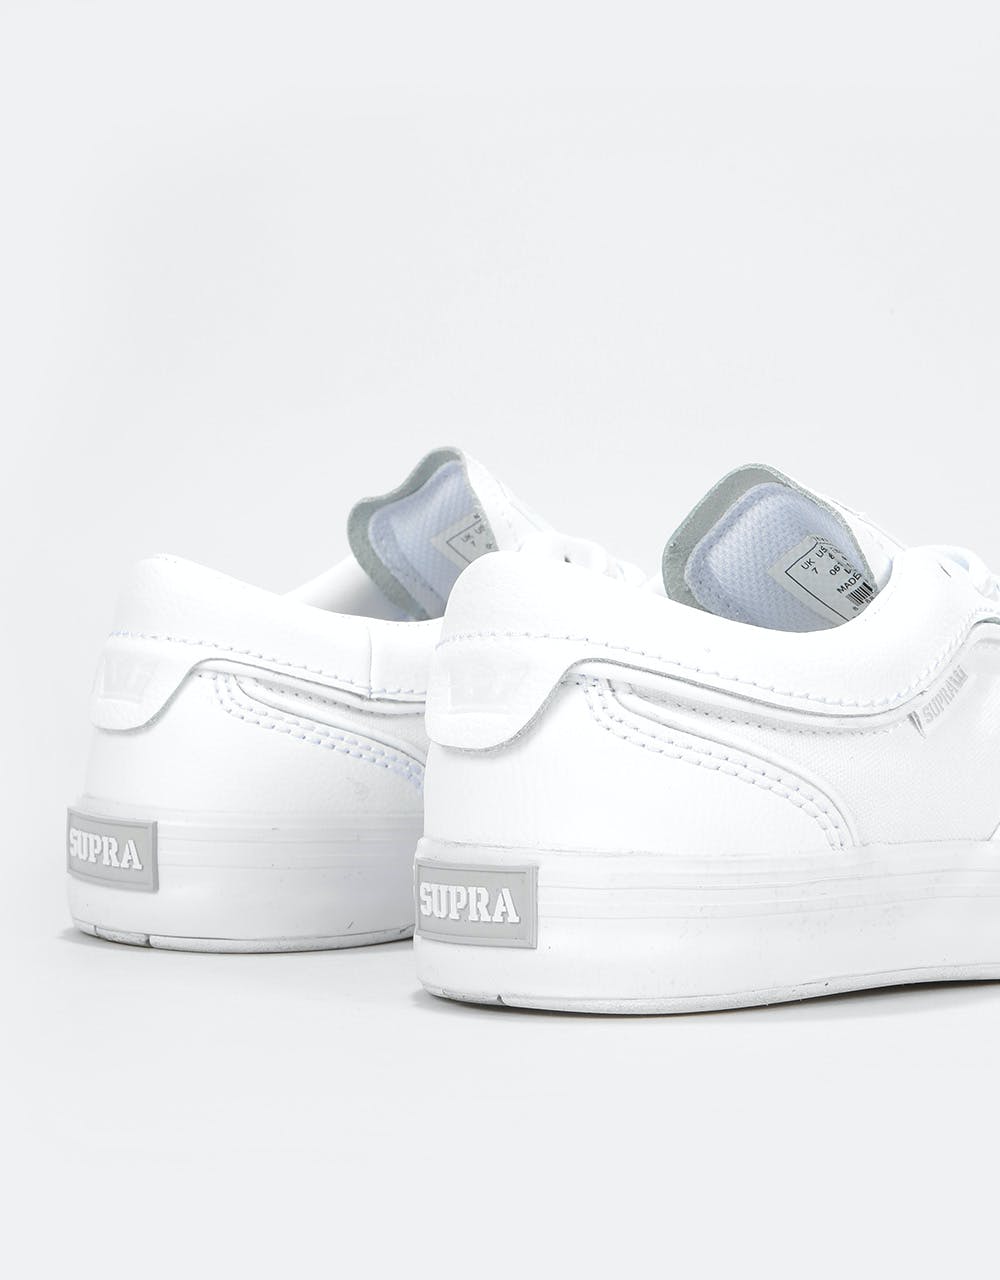 Supra Hammer VTG Skate Shoes - White/White